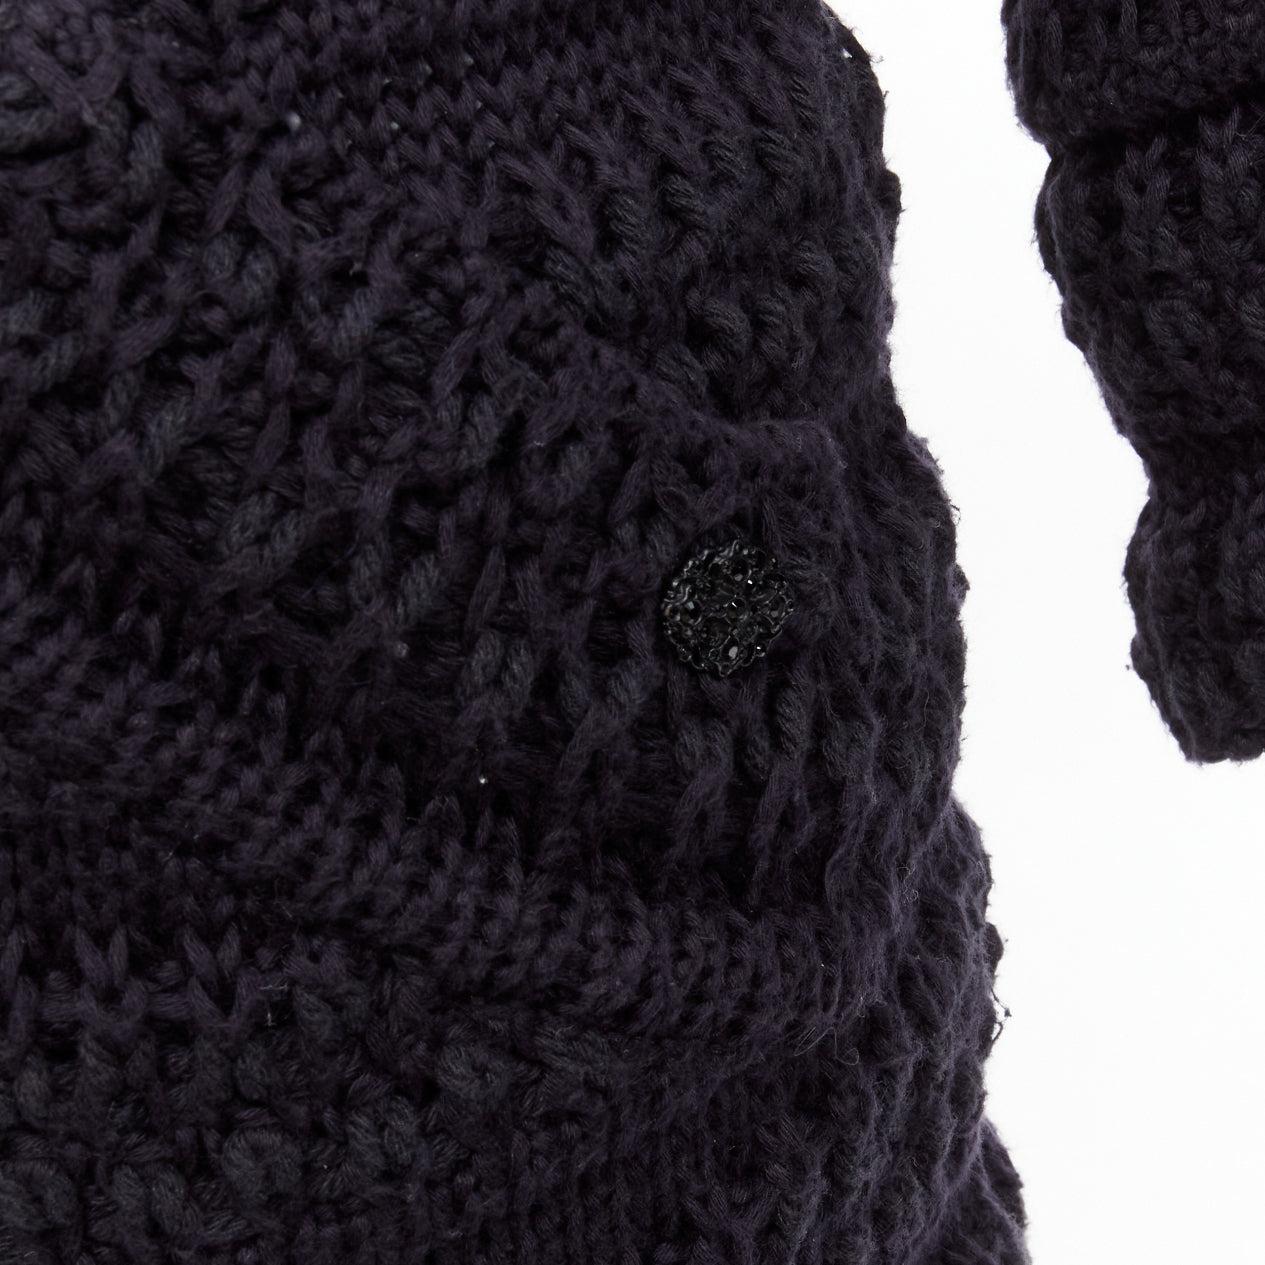 Chanel noir 100 % coton chunky knit asymmetric tulip hem bell sleeve sweater dress FR36 S
Référence : TGAS/D00664
Marque : Chanel
Matériau : Coton
Couleur : Noir
Motif : Solide
Fermeture : Pull-over
Détails supplémentaires : Bouton orné du logo CC